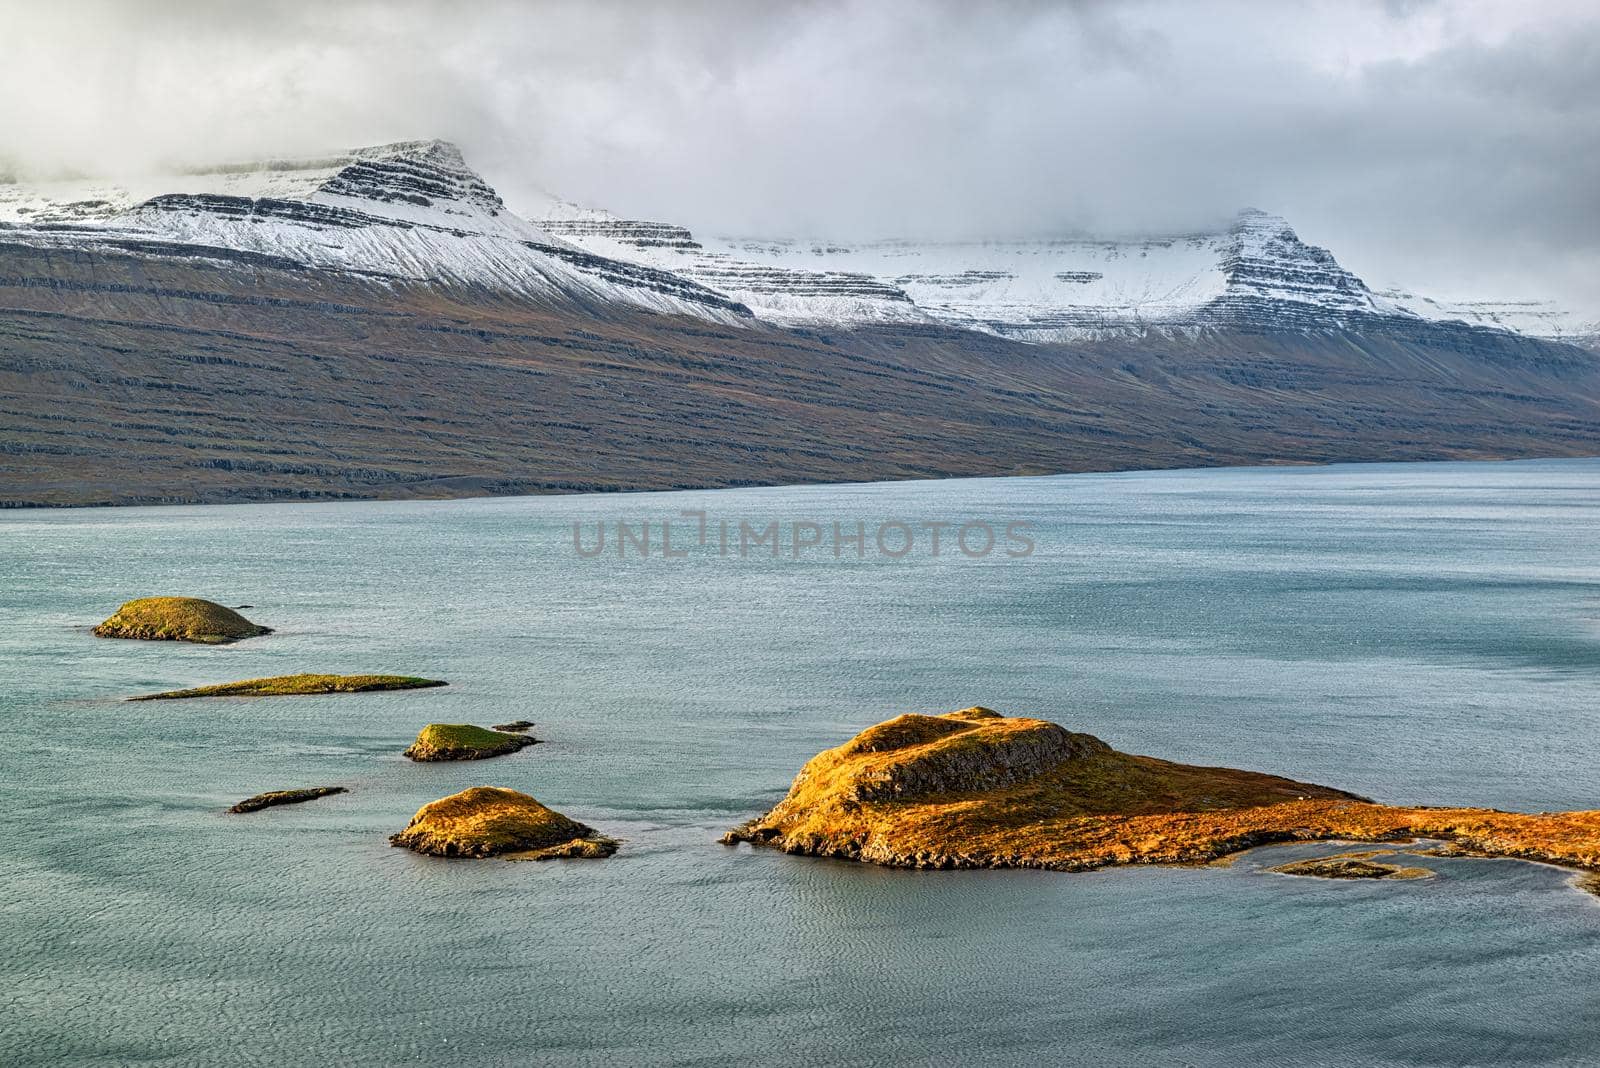 Eskifjordur on the east side of Iceland by LuigiMorbidelli